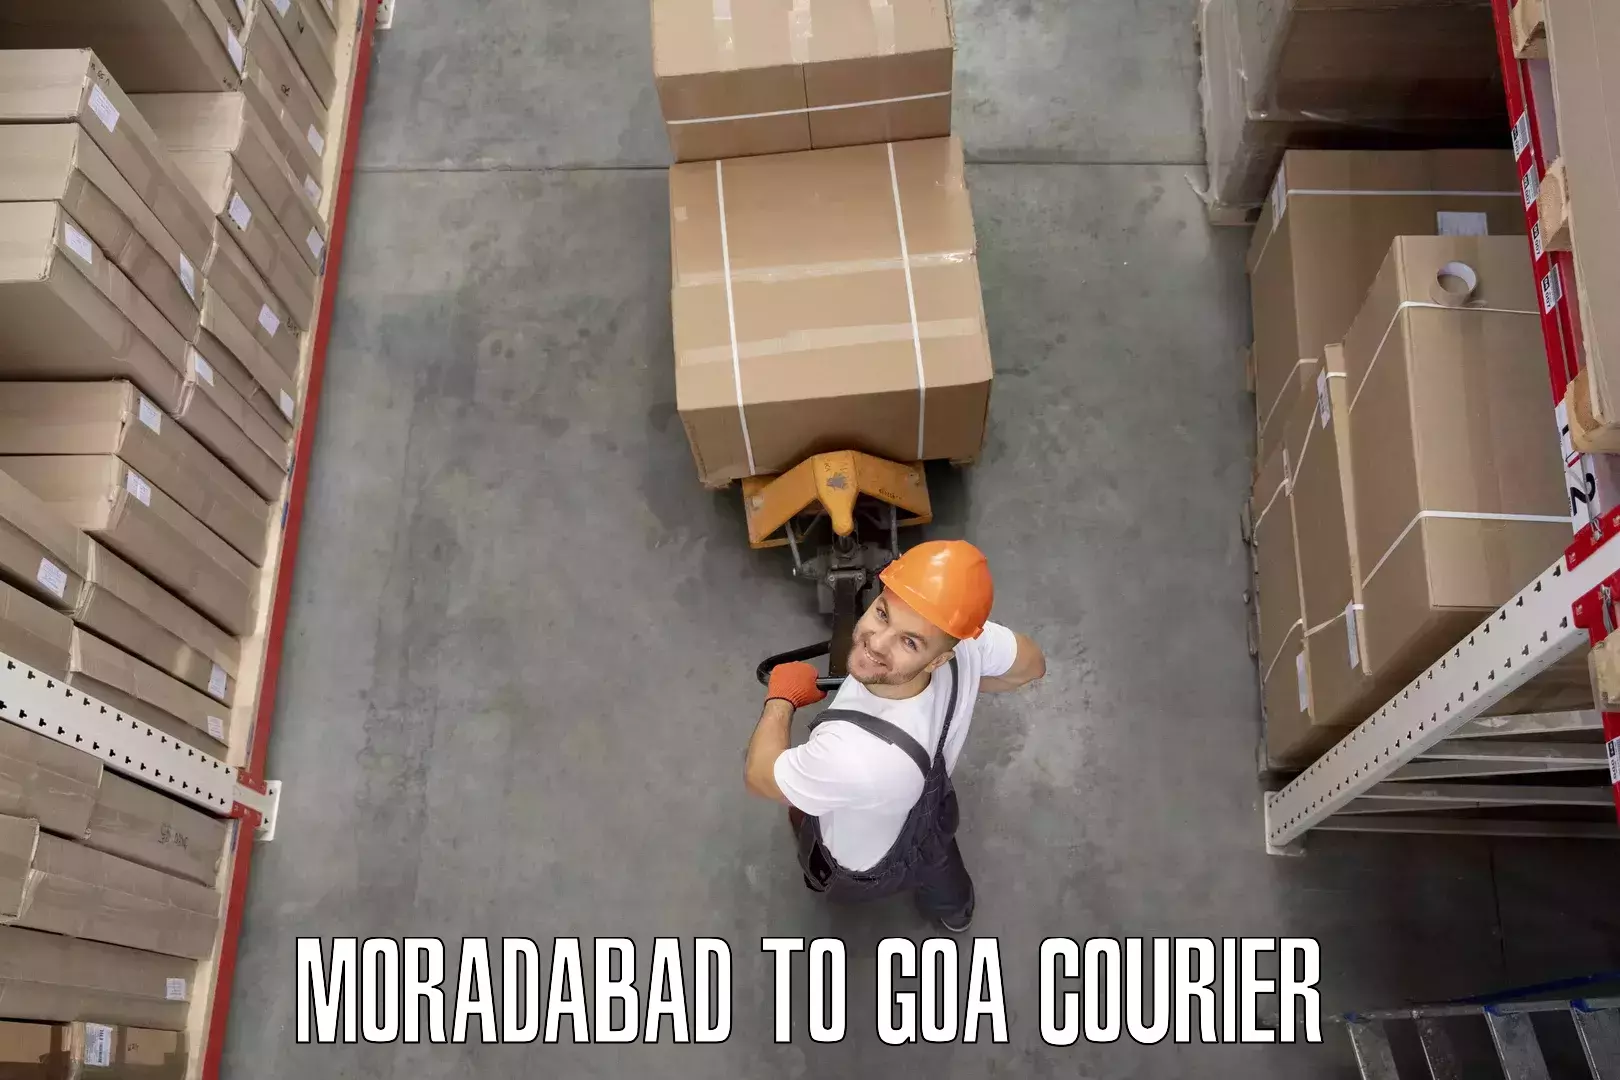 Door-to-door relocation services Moradabad to NIT Goa